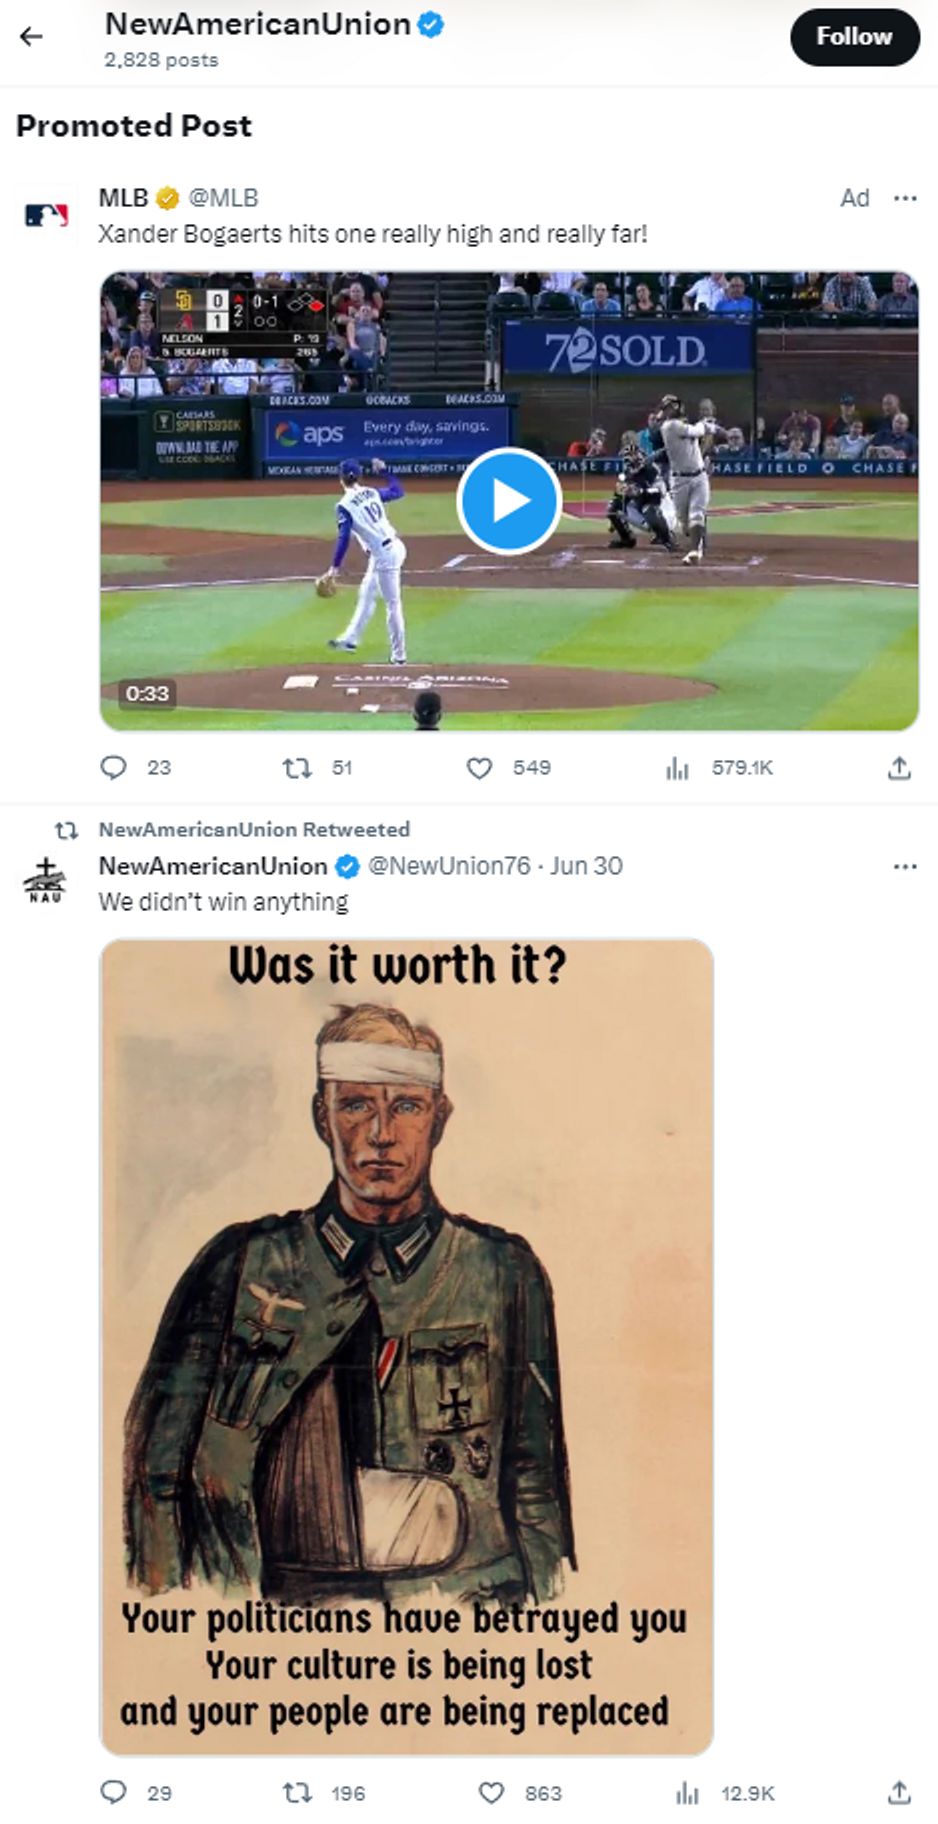 Один из примеров рекламы Главной лиги бейсбола (MLB) в одной ленте с твитами аккаунта, прославляющего Гитлера.